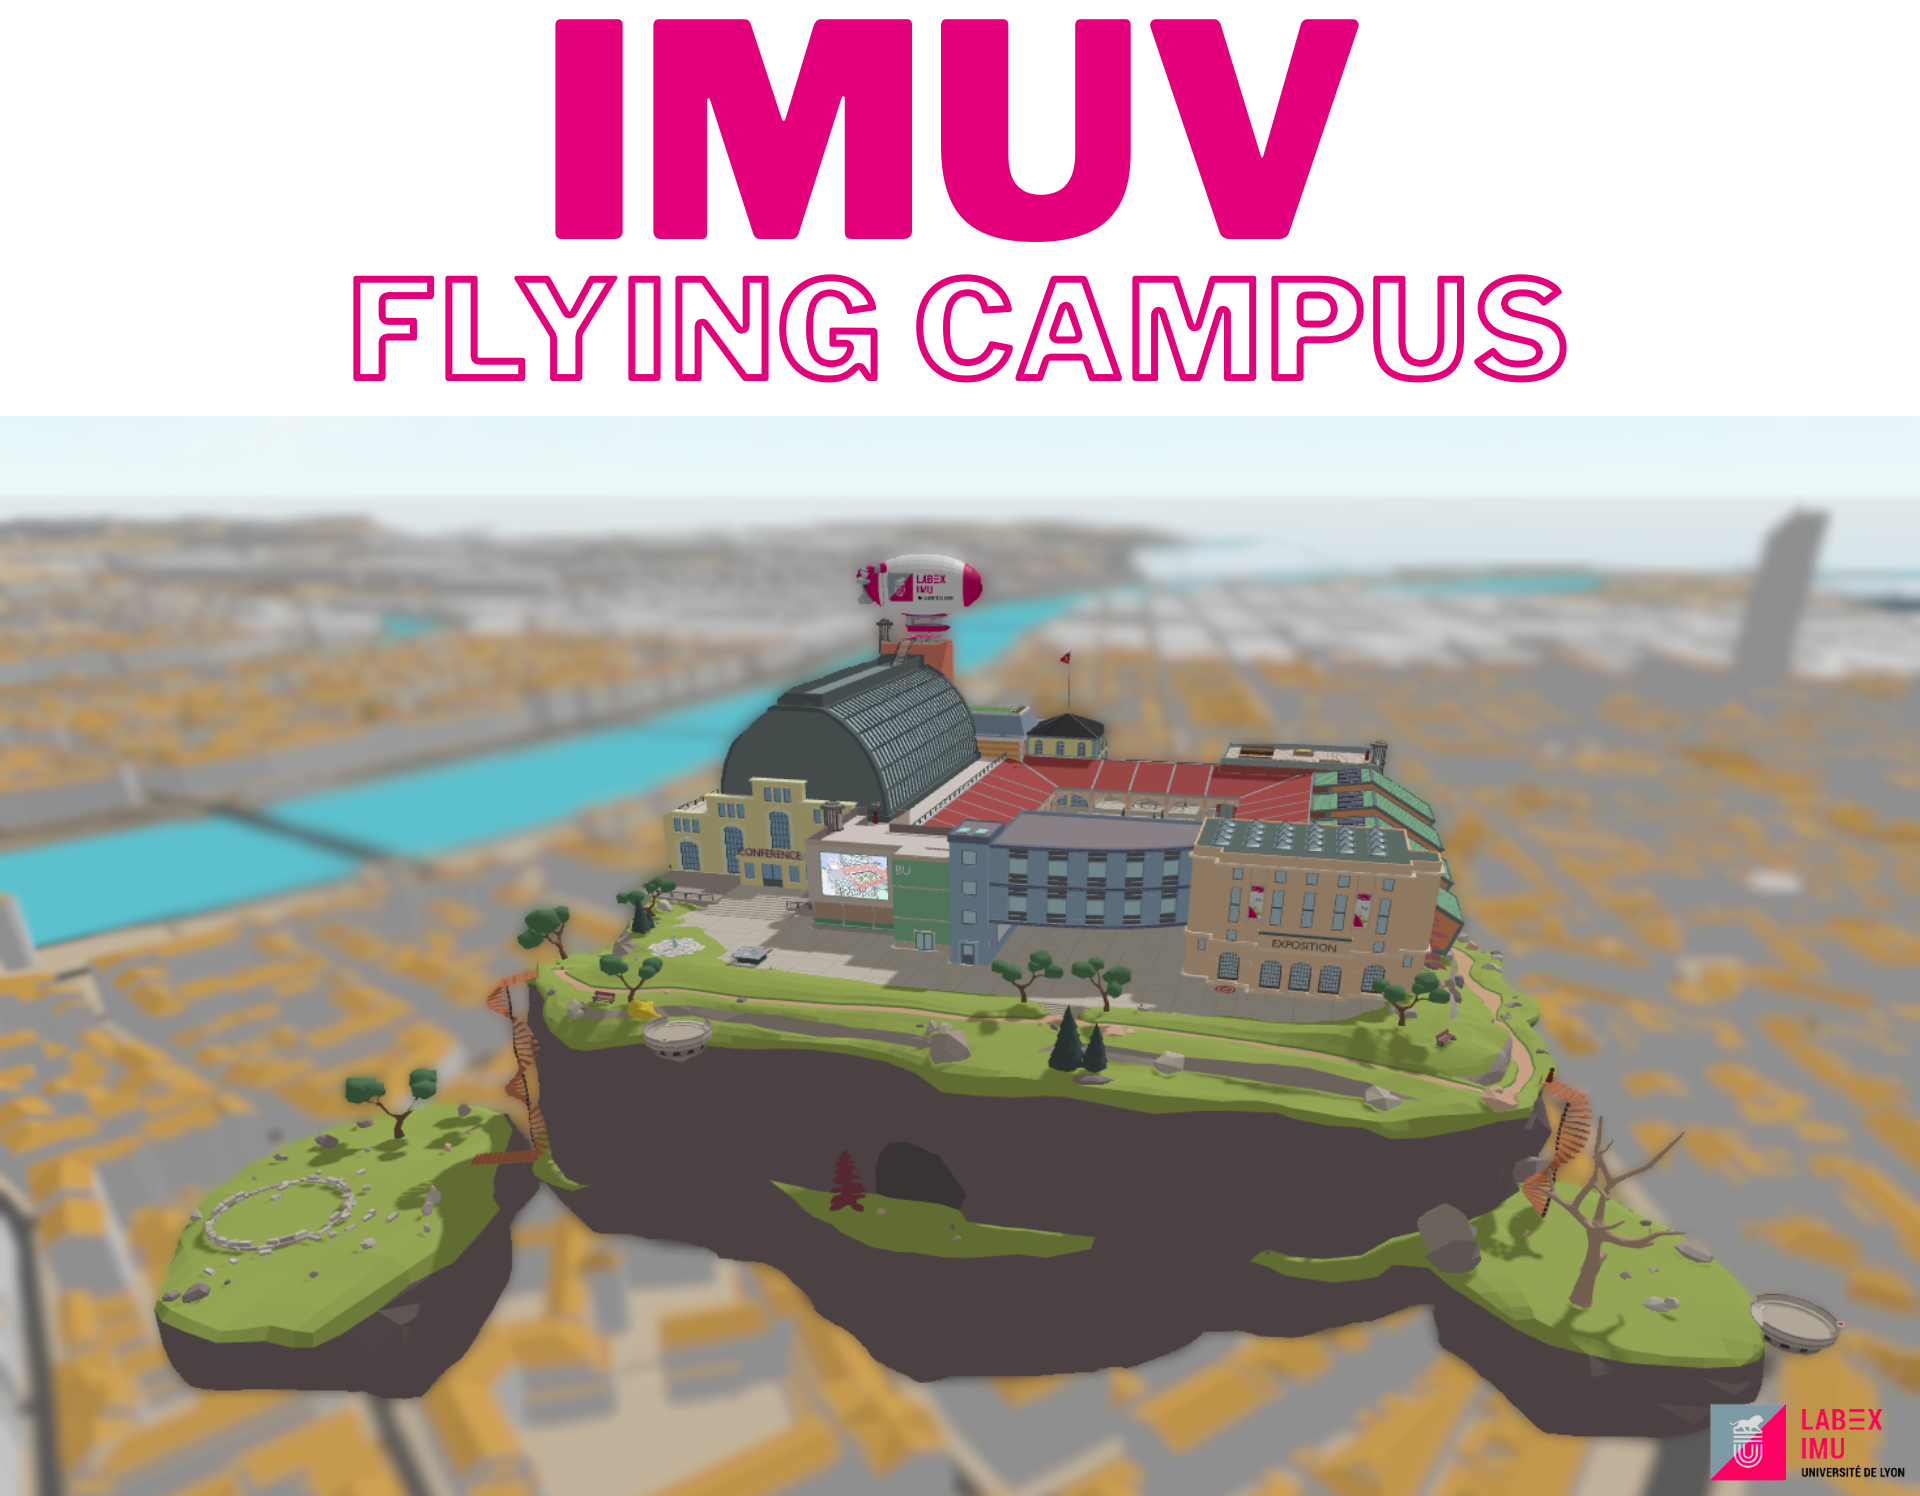 IMUV Flying Campus Mosaic